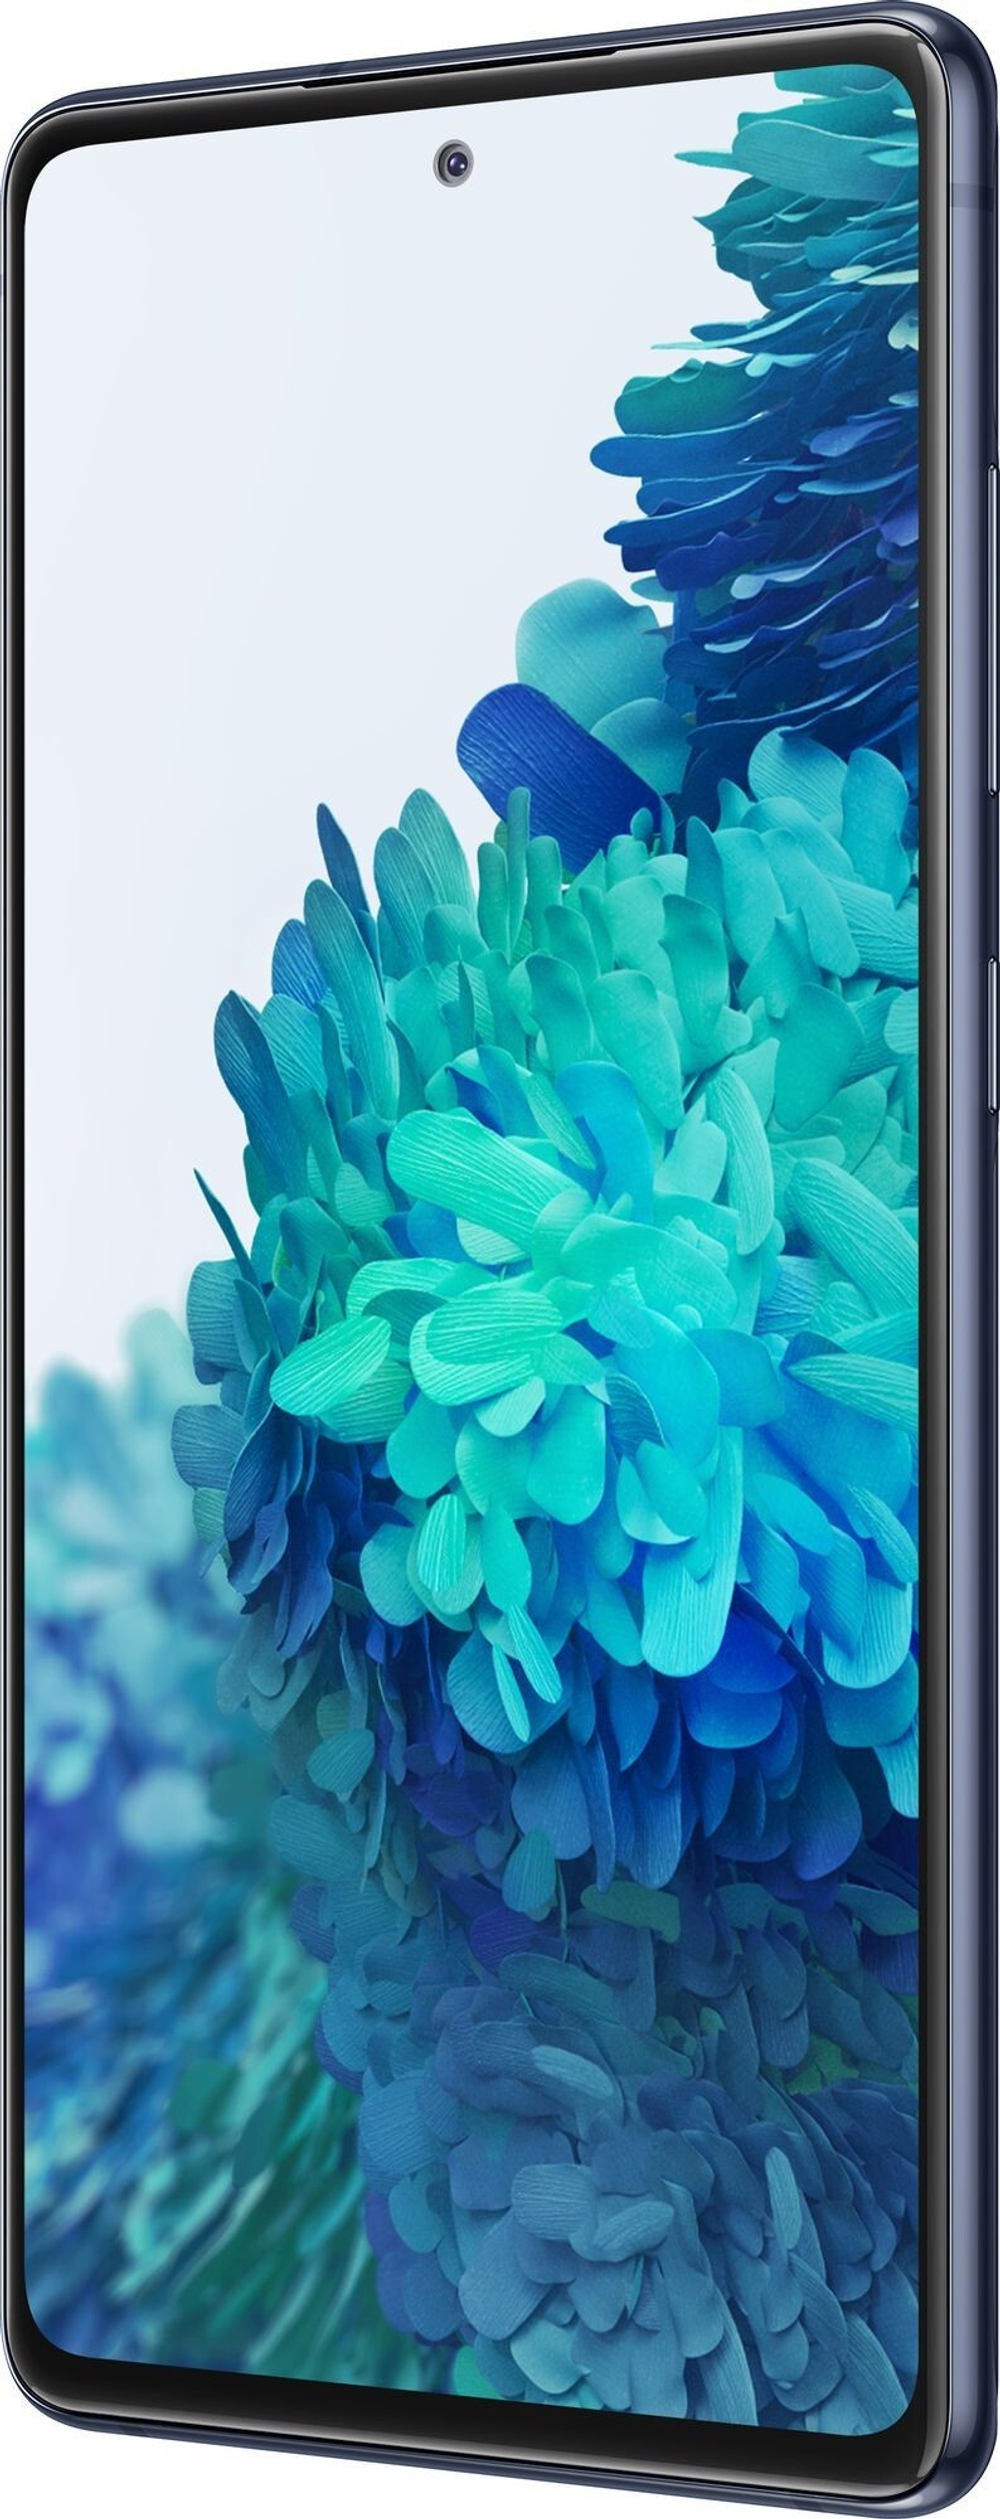 Смартфон Samsung Galaxy S20 FE 6/128GB